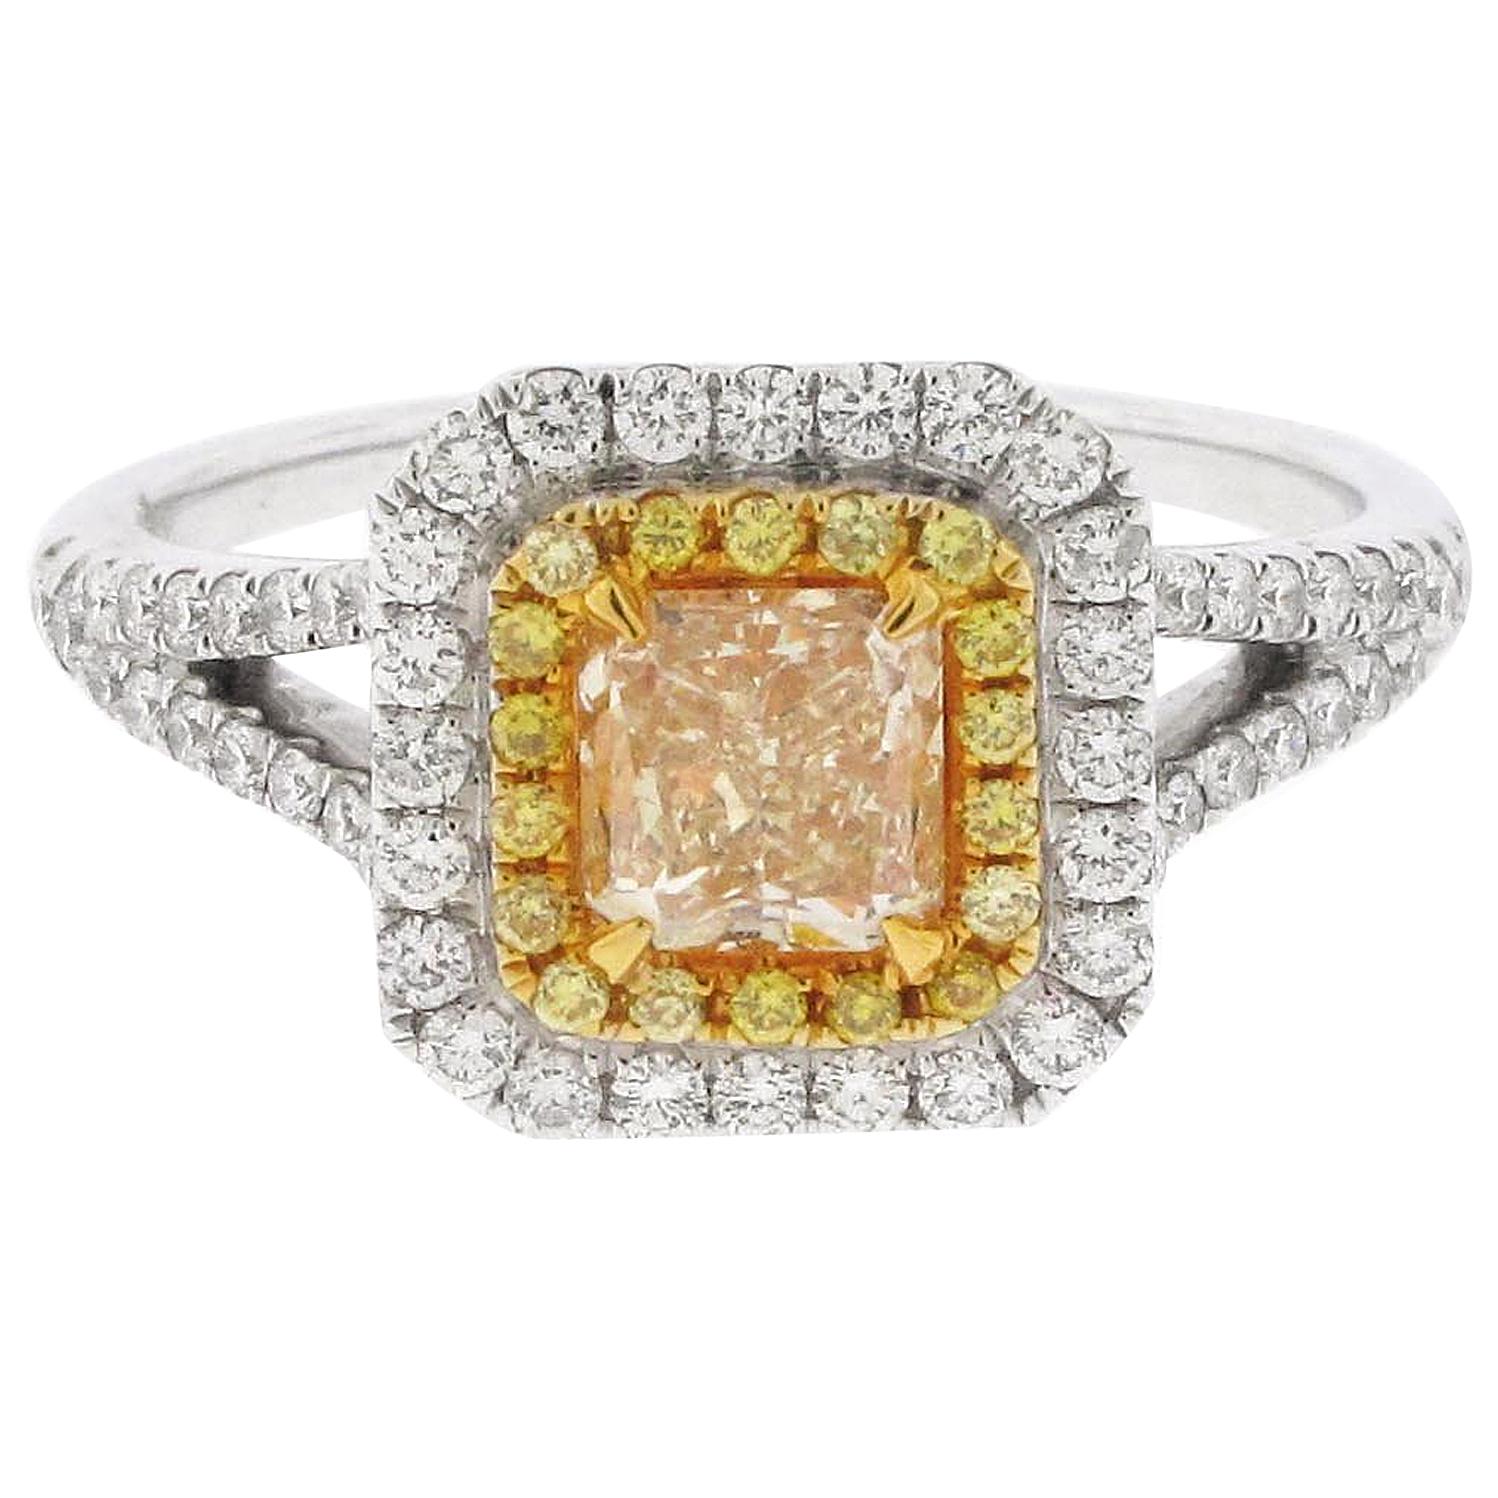 .73 Carat Radiant Cut Yellow Diamond Engagement Ring, 18 Karat White Gold